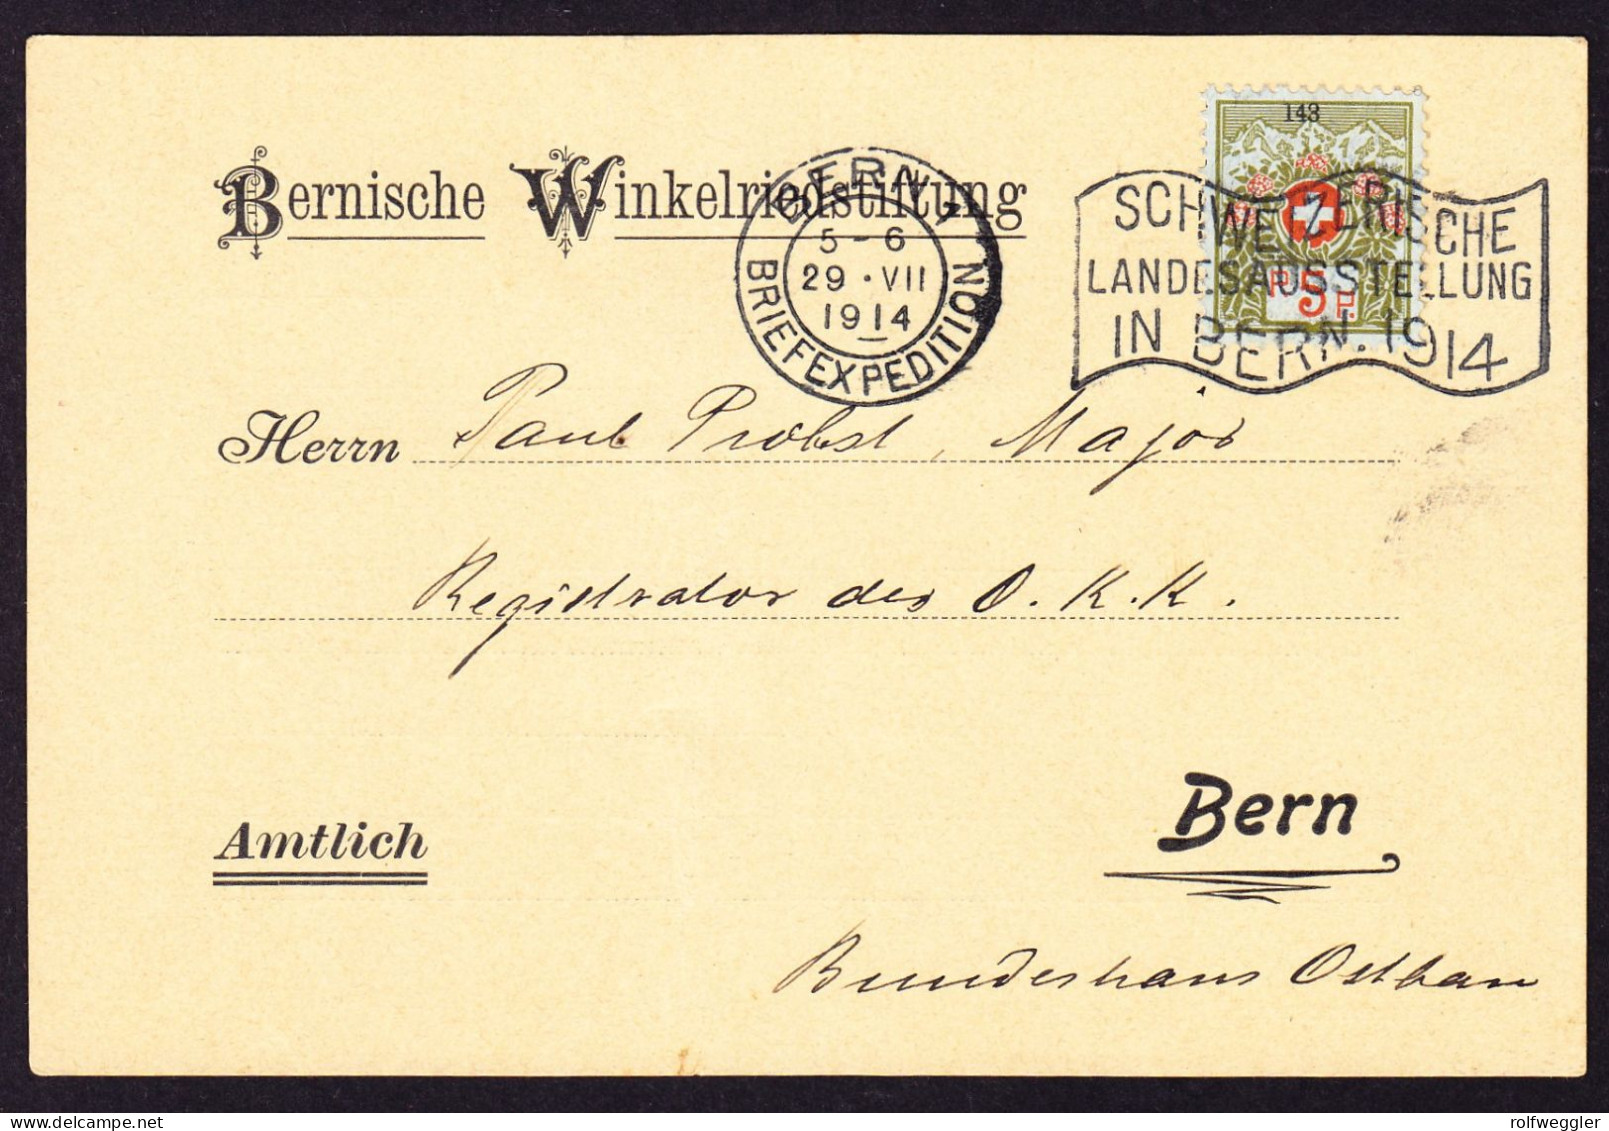 1914 5 Rp Marke Mit Kleiner Nummer Mit Landesausstellung Bern Stempel Auf Karte: Bernische Winkelriedstiftung - Franchigia